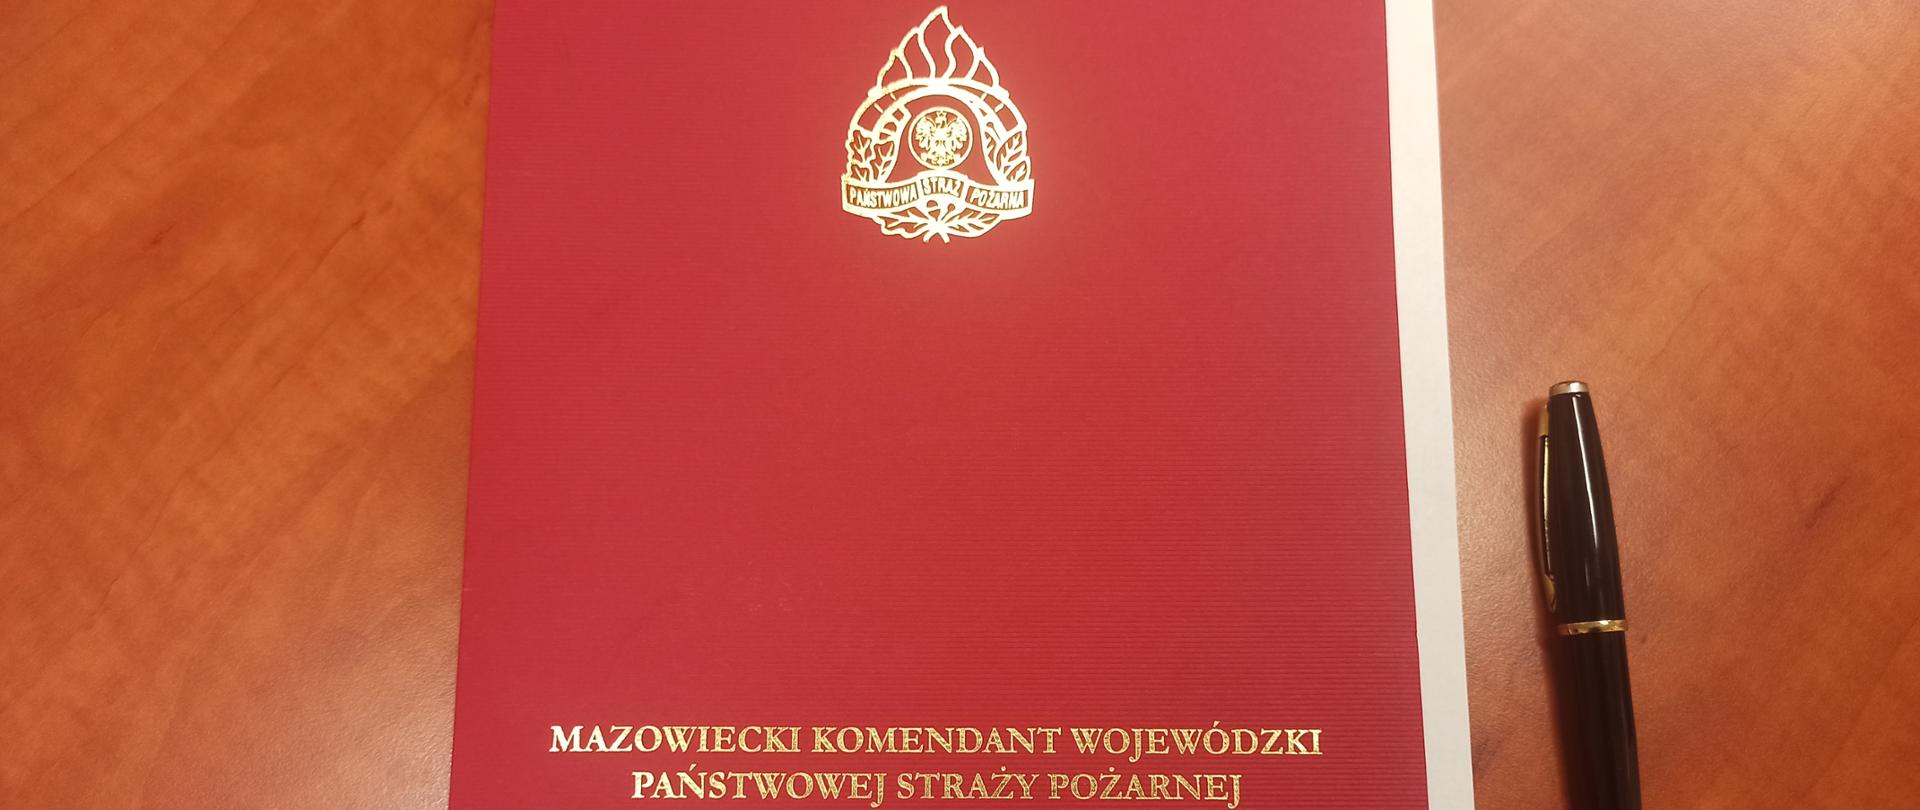 Na zdjęciu okładka w której przesłano rozkazy Mazowieckiego Komendanta Wojewódzkiego PSP o przyznaniu nagród funkcjonariuszom KM PSP w Warszawie